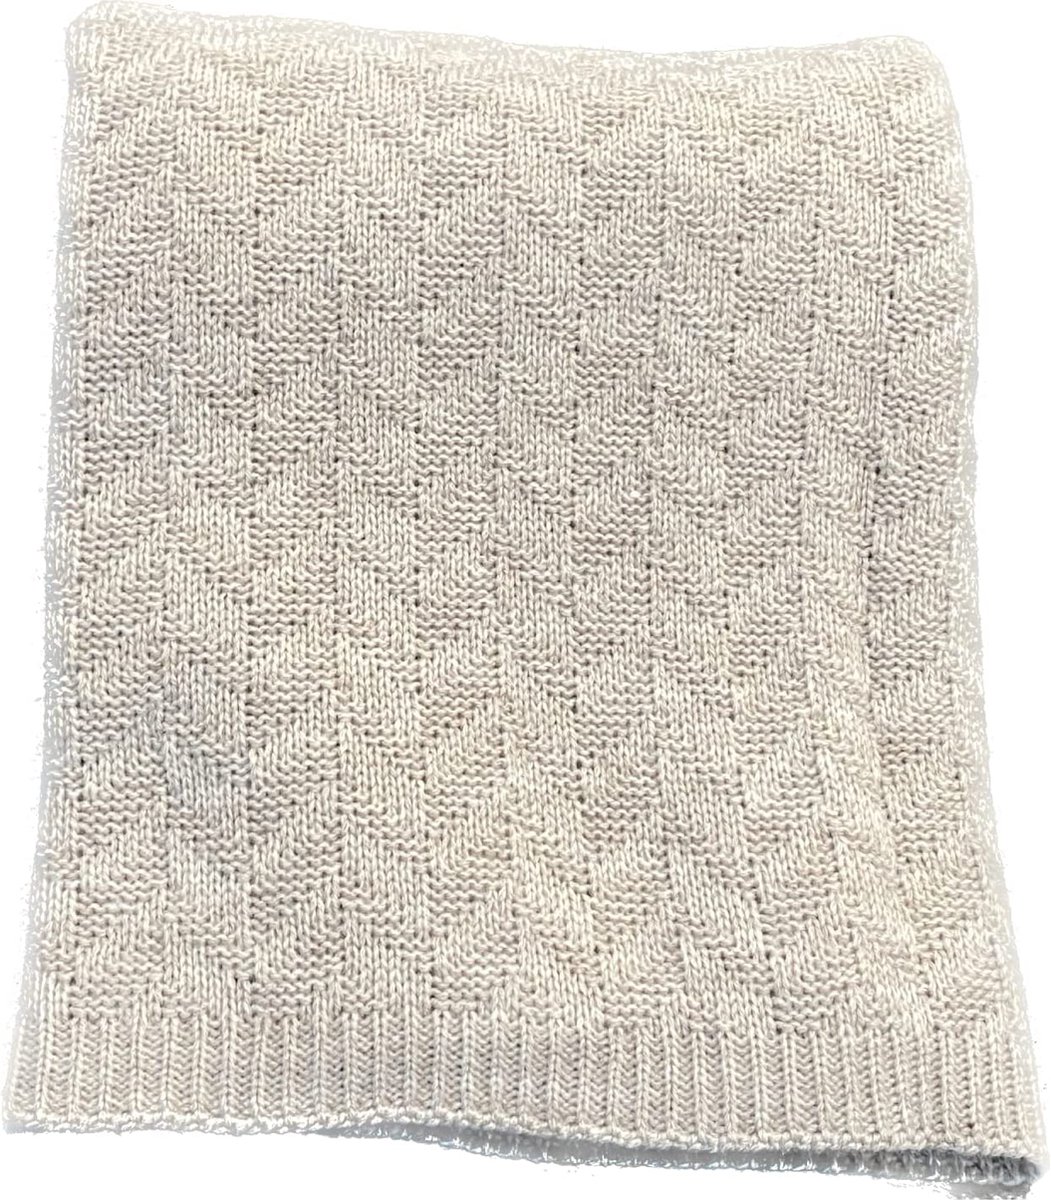 Couverture enveloppante - écharpe bébé - nouveau-né - hiver